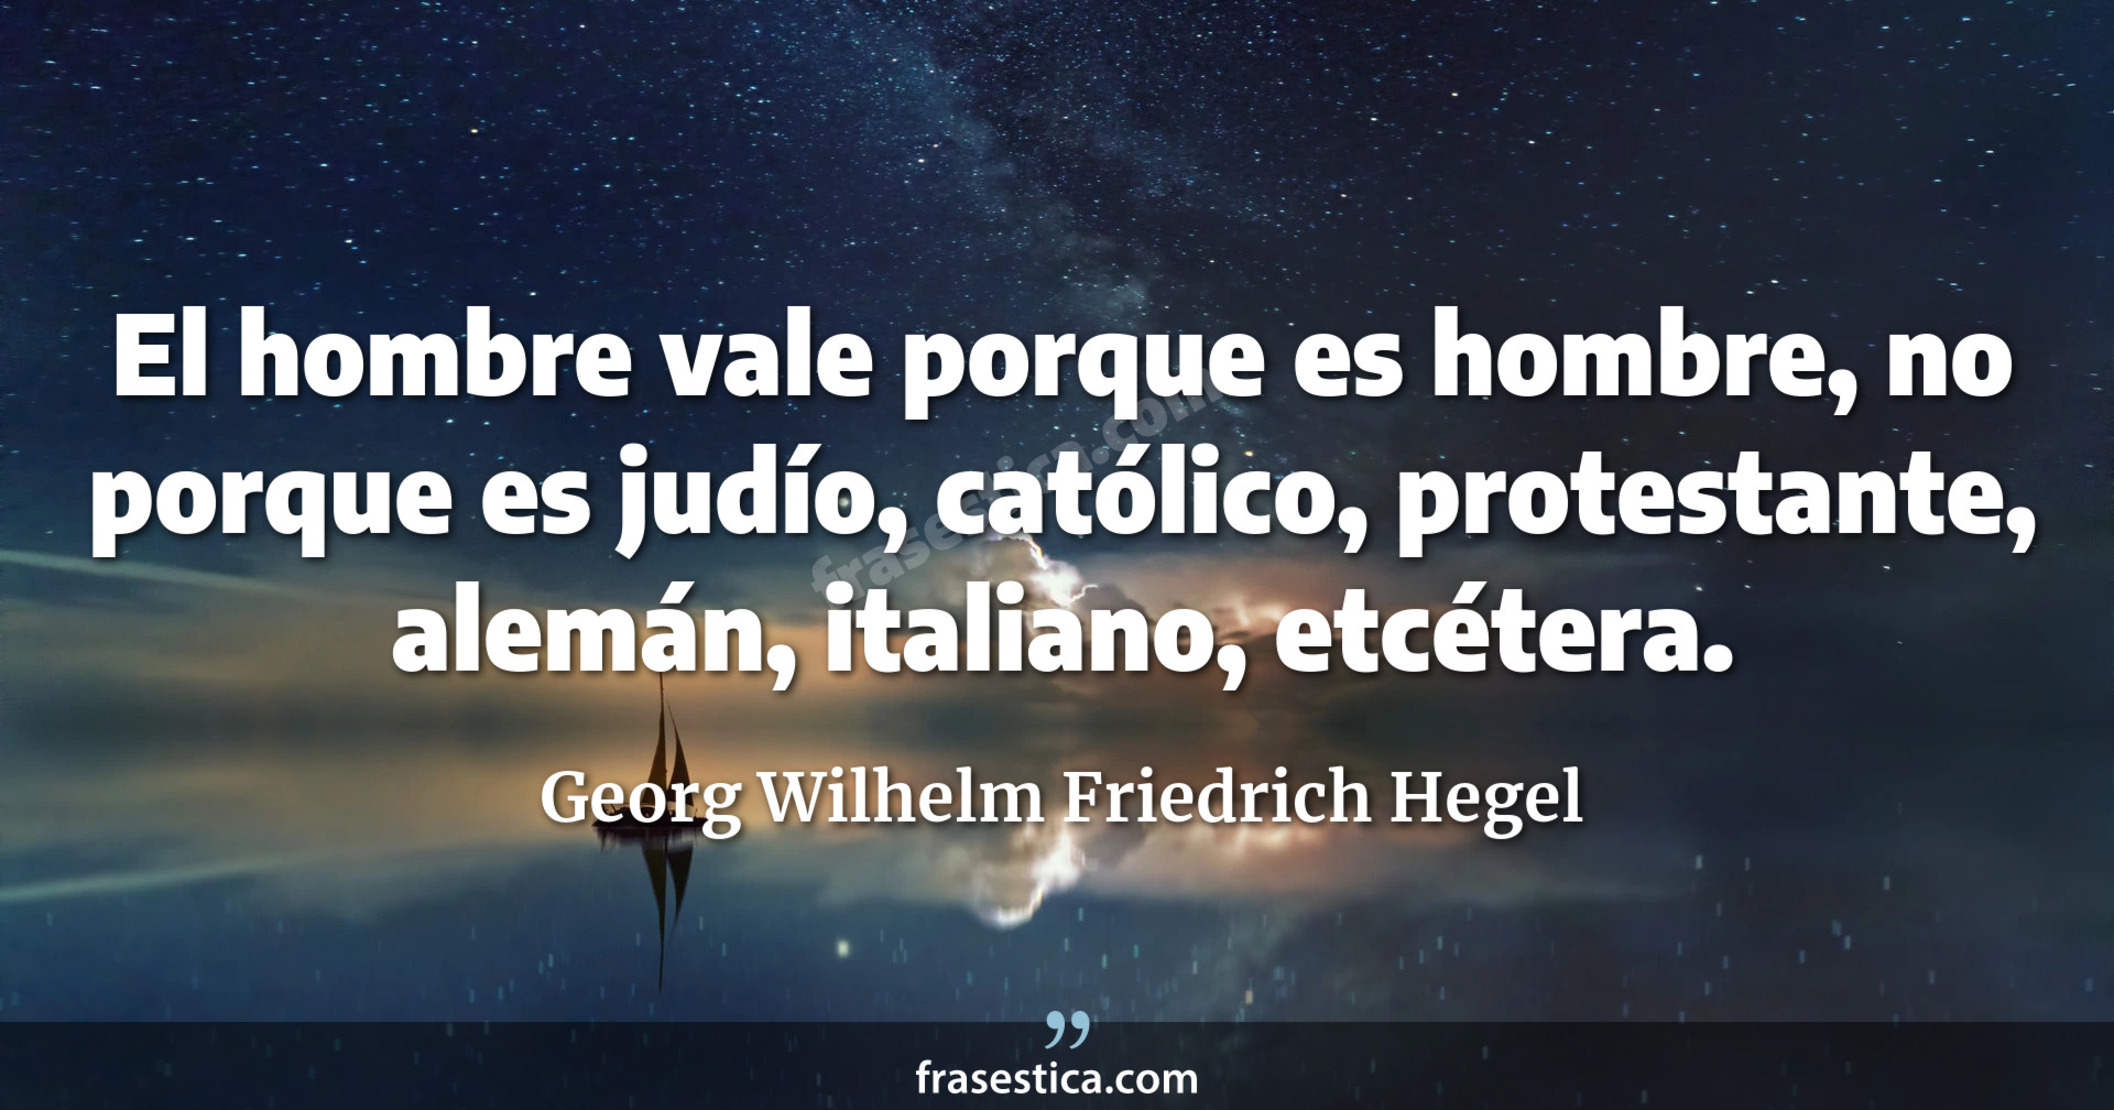 El hombre vale porque es hombre, no porque es judío, católico, protestante, alemán, italiano, etcétera. - Georg Wilhelm Friedrich Hegel